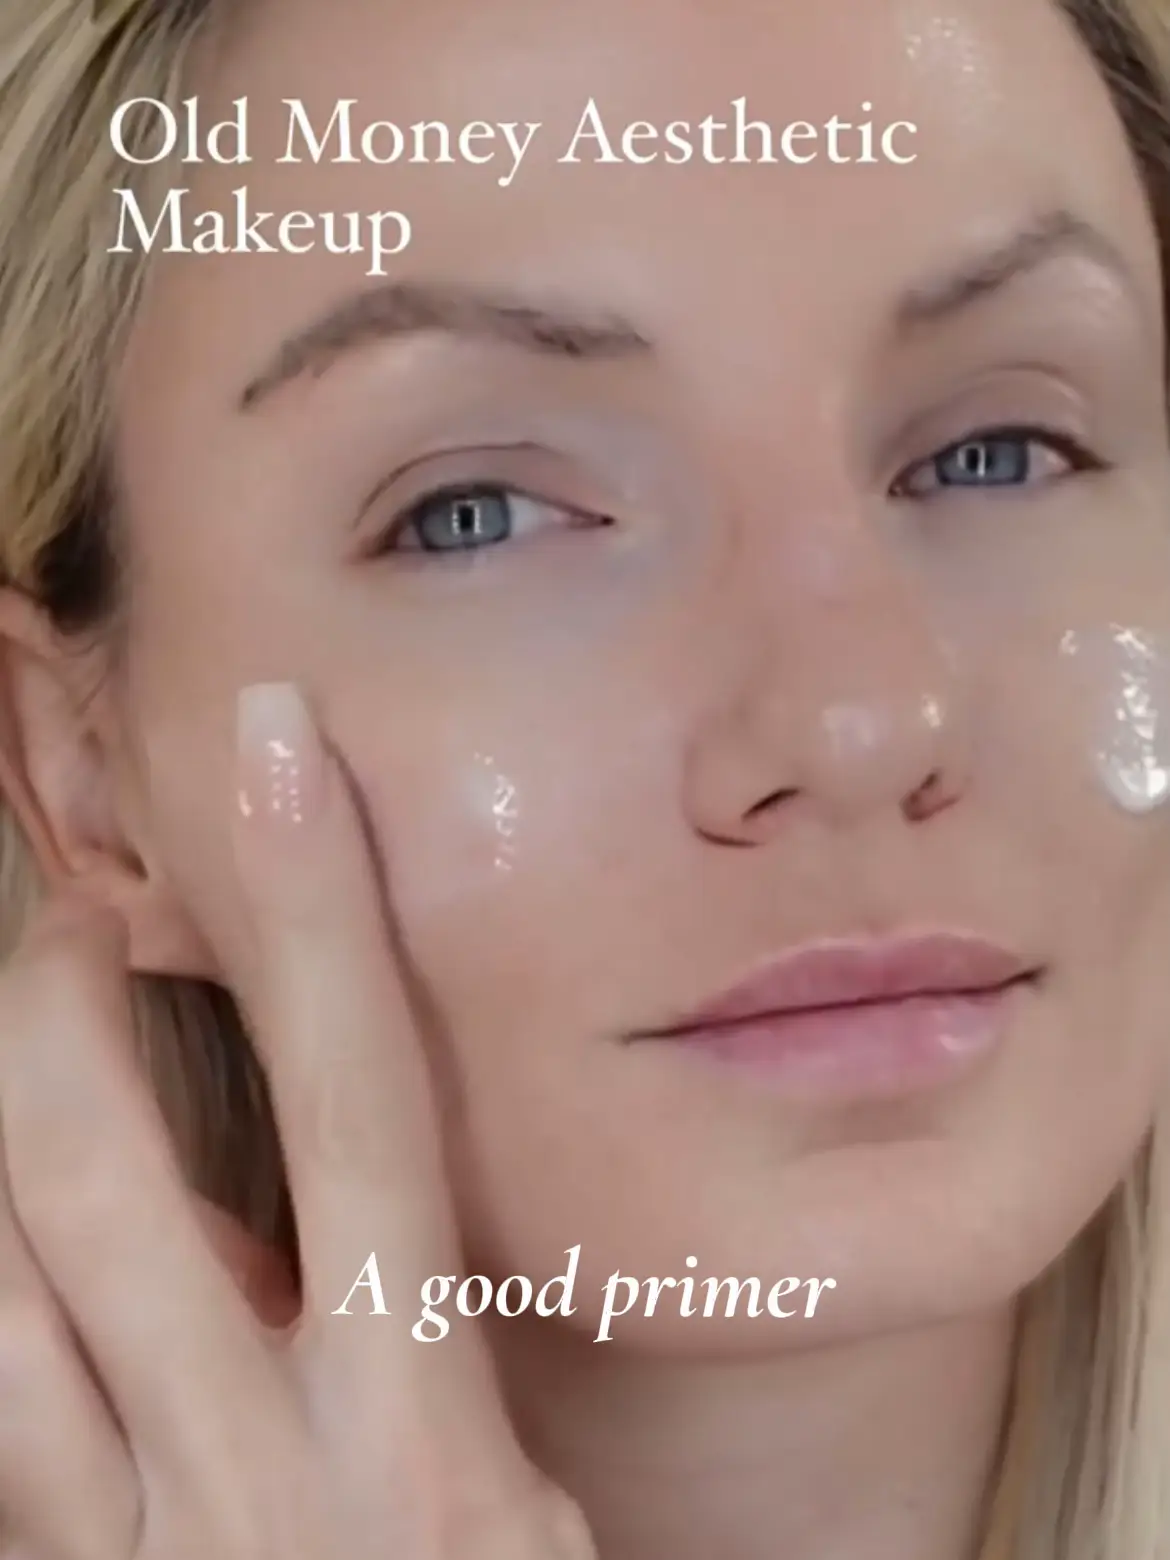 makeup look elegant for konvokesyen - Lemon8 Search